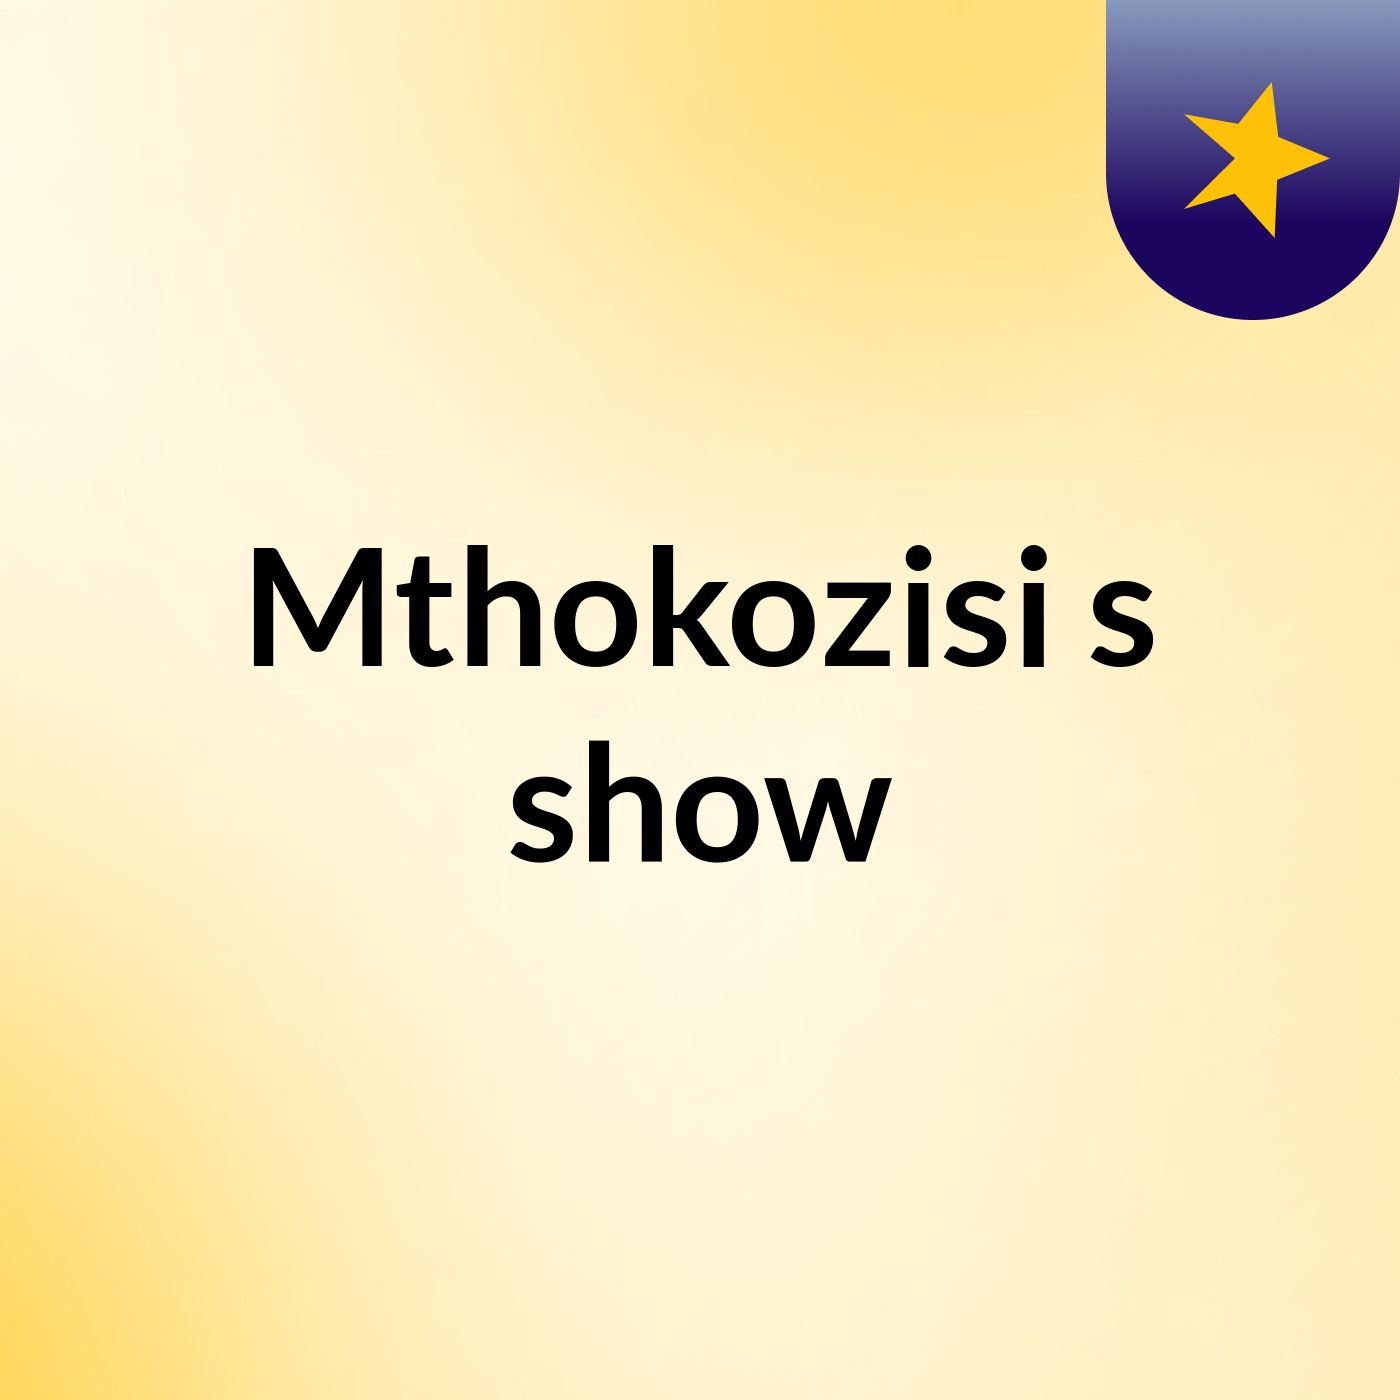 Mthokozisi's show